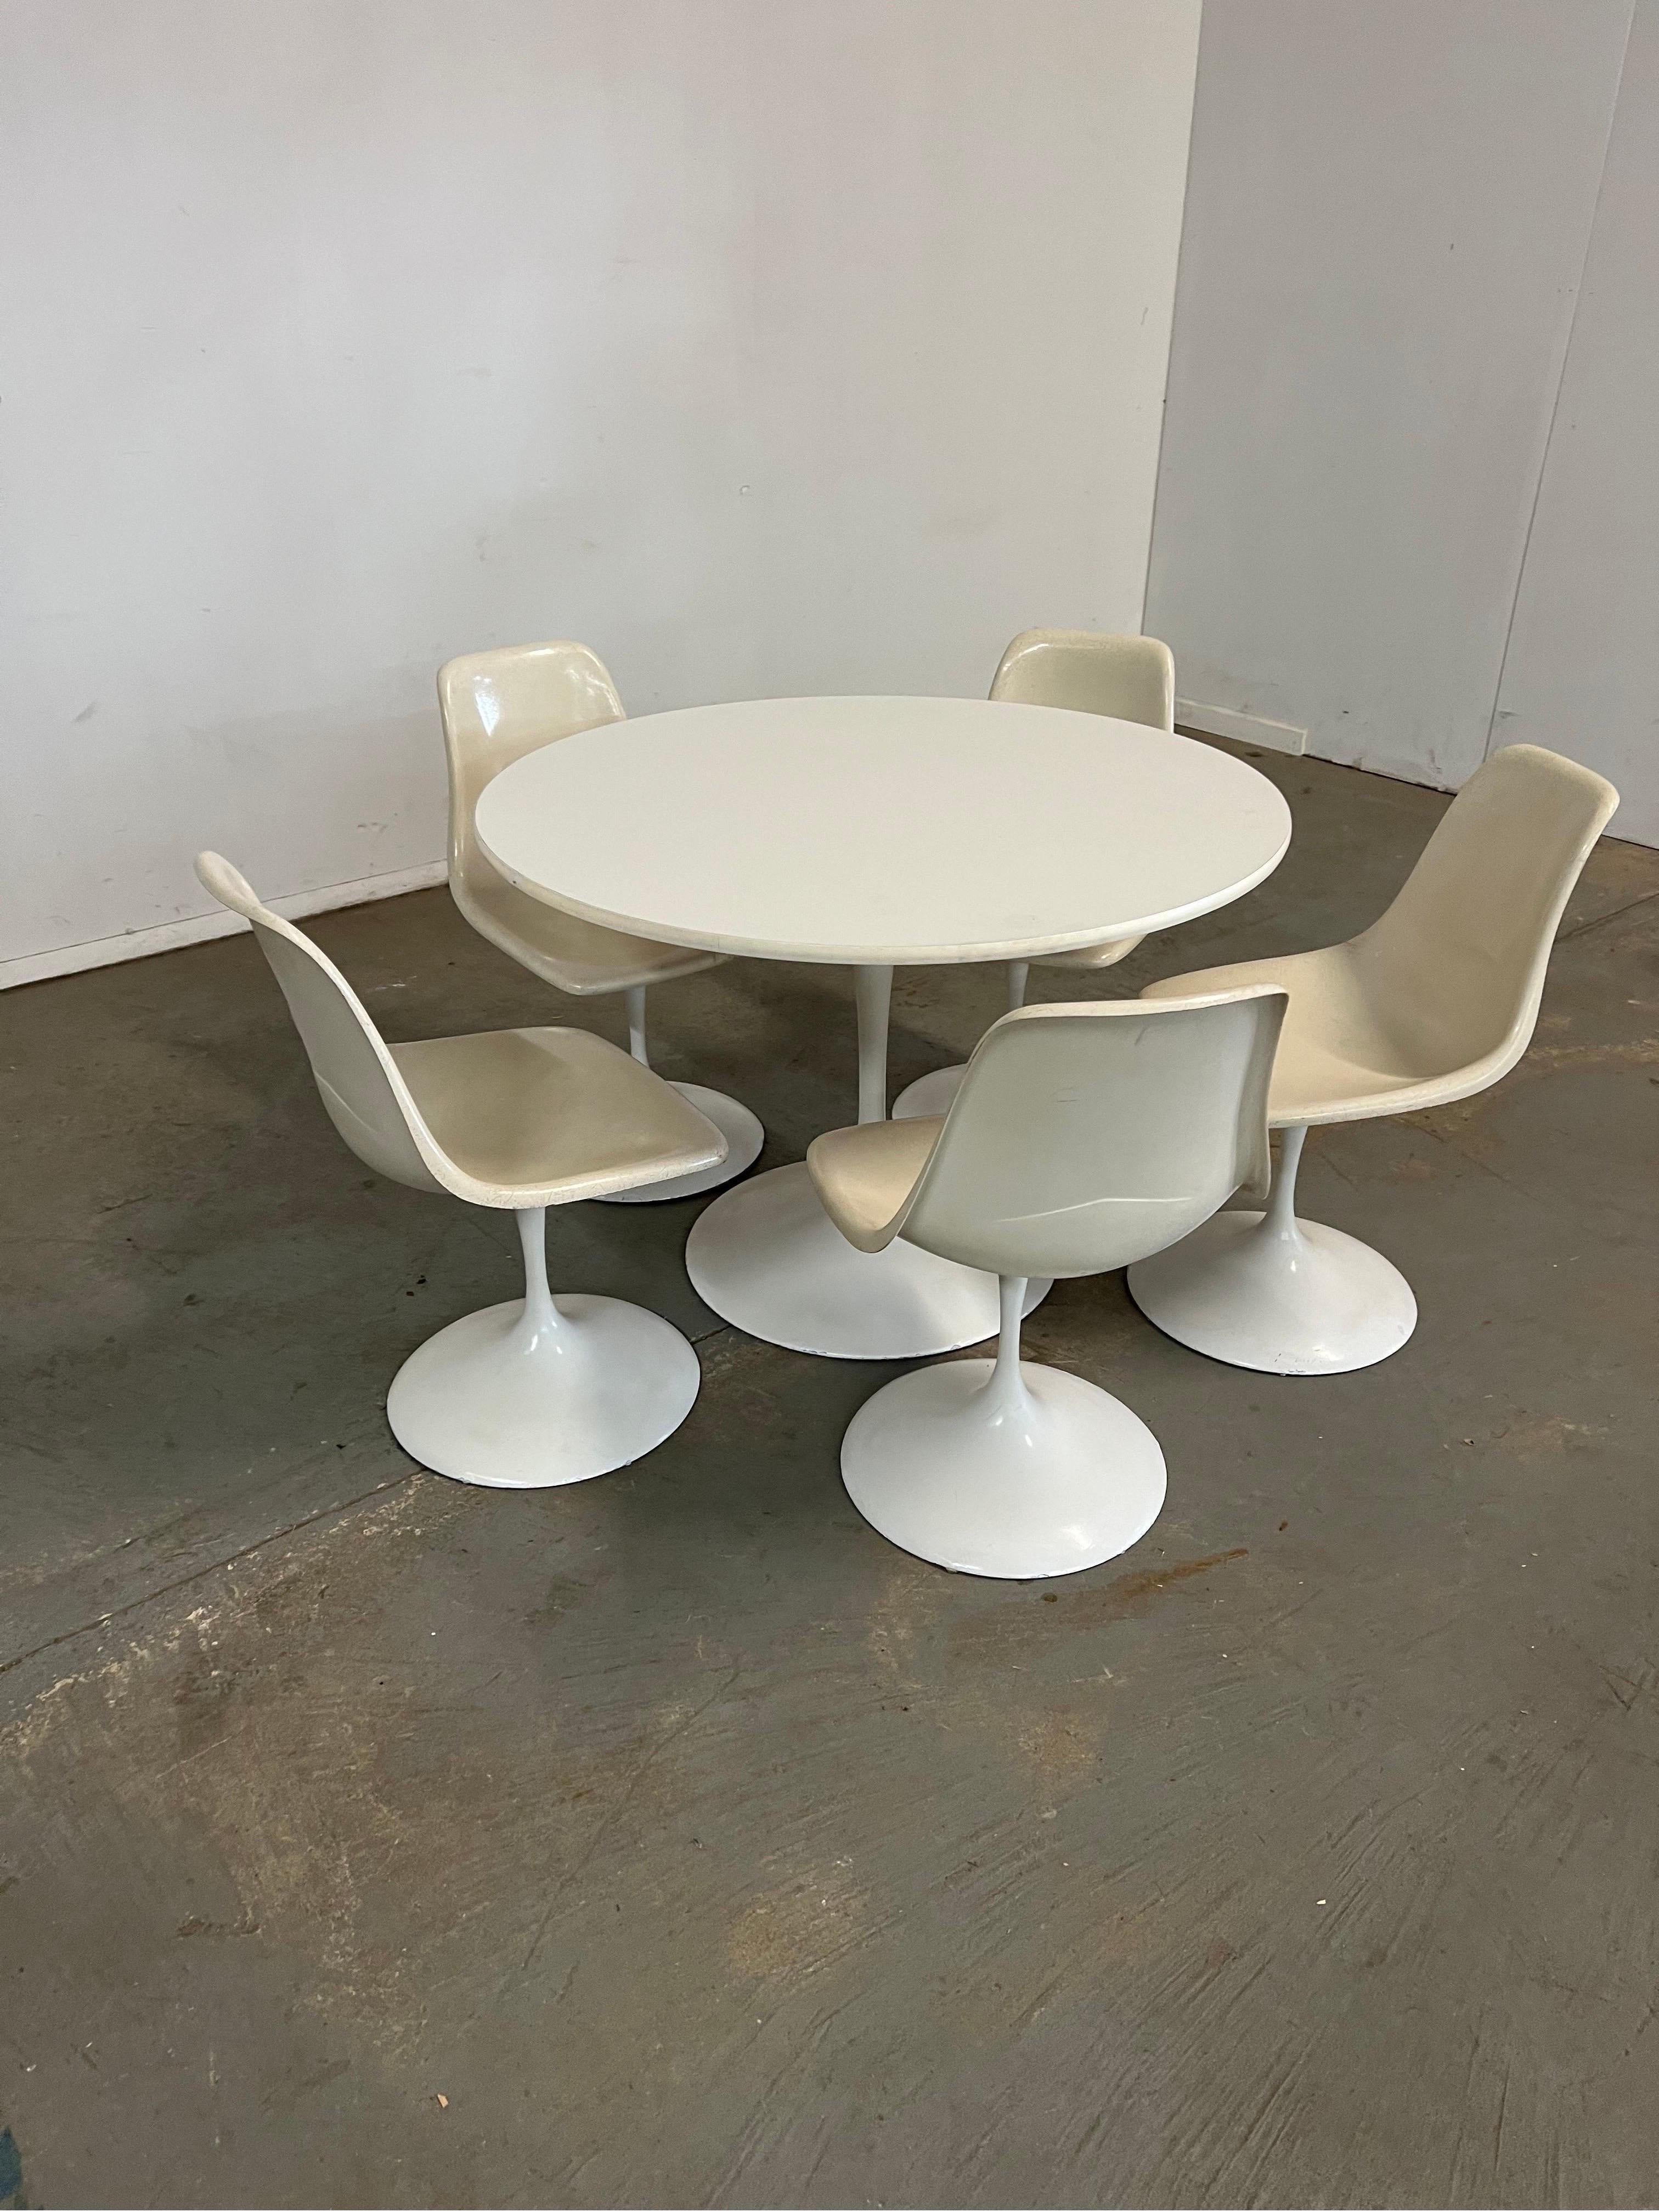 Table et chaises de salle à manger ronde Tulip de style Eero Saarinen du milieu du siècle dernier
L'ensemble proposé est un ensemble de salle à manger 6 pièces, similaire au style d'Eero Saarinen. Cet ensemble est très polyvalent et convient